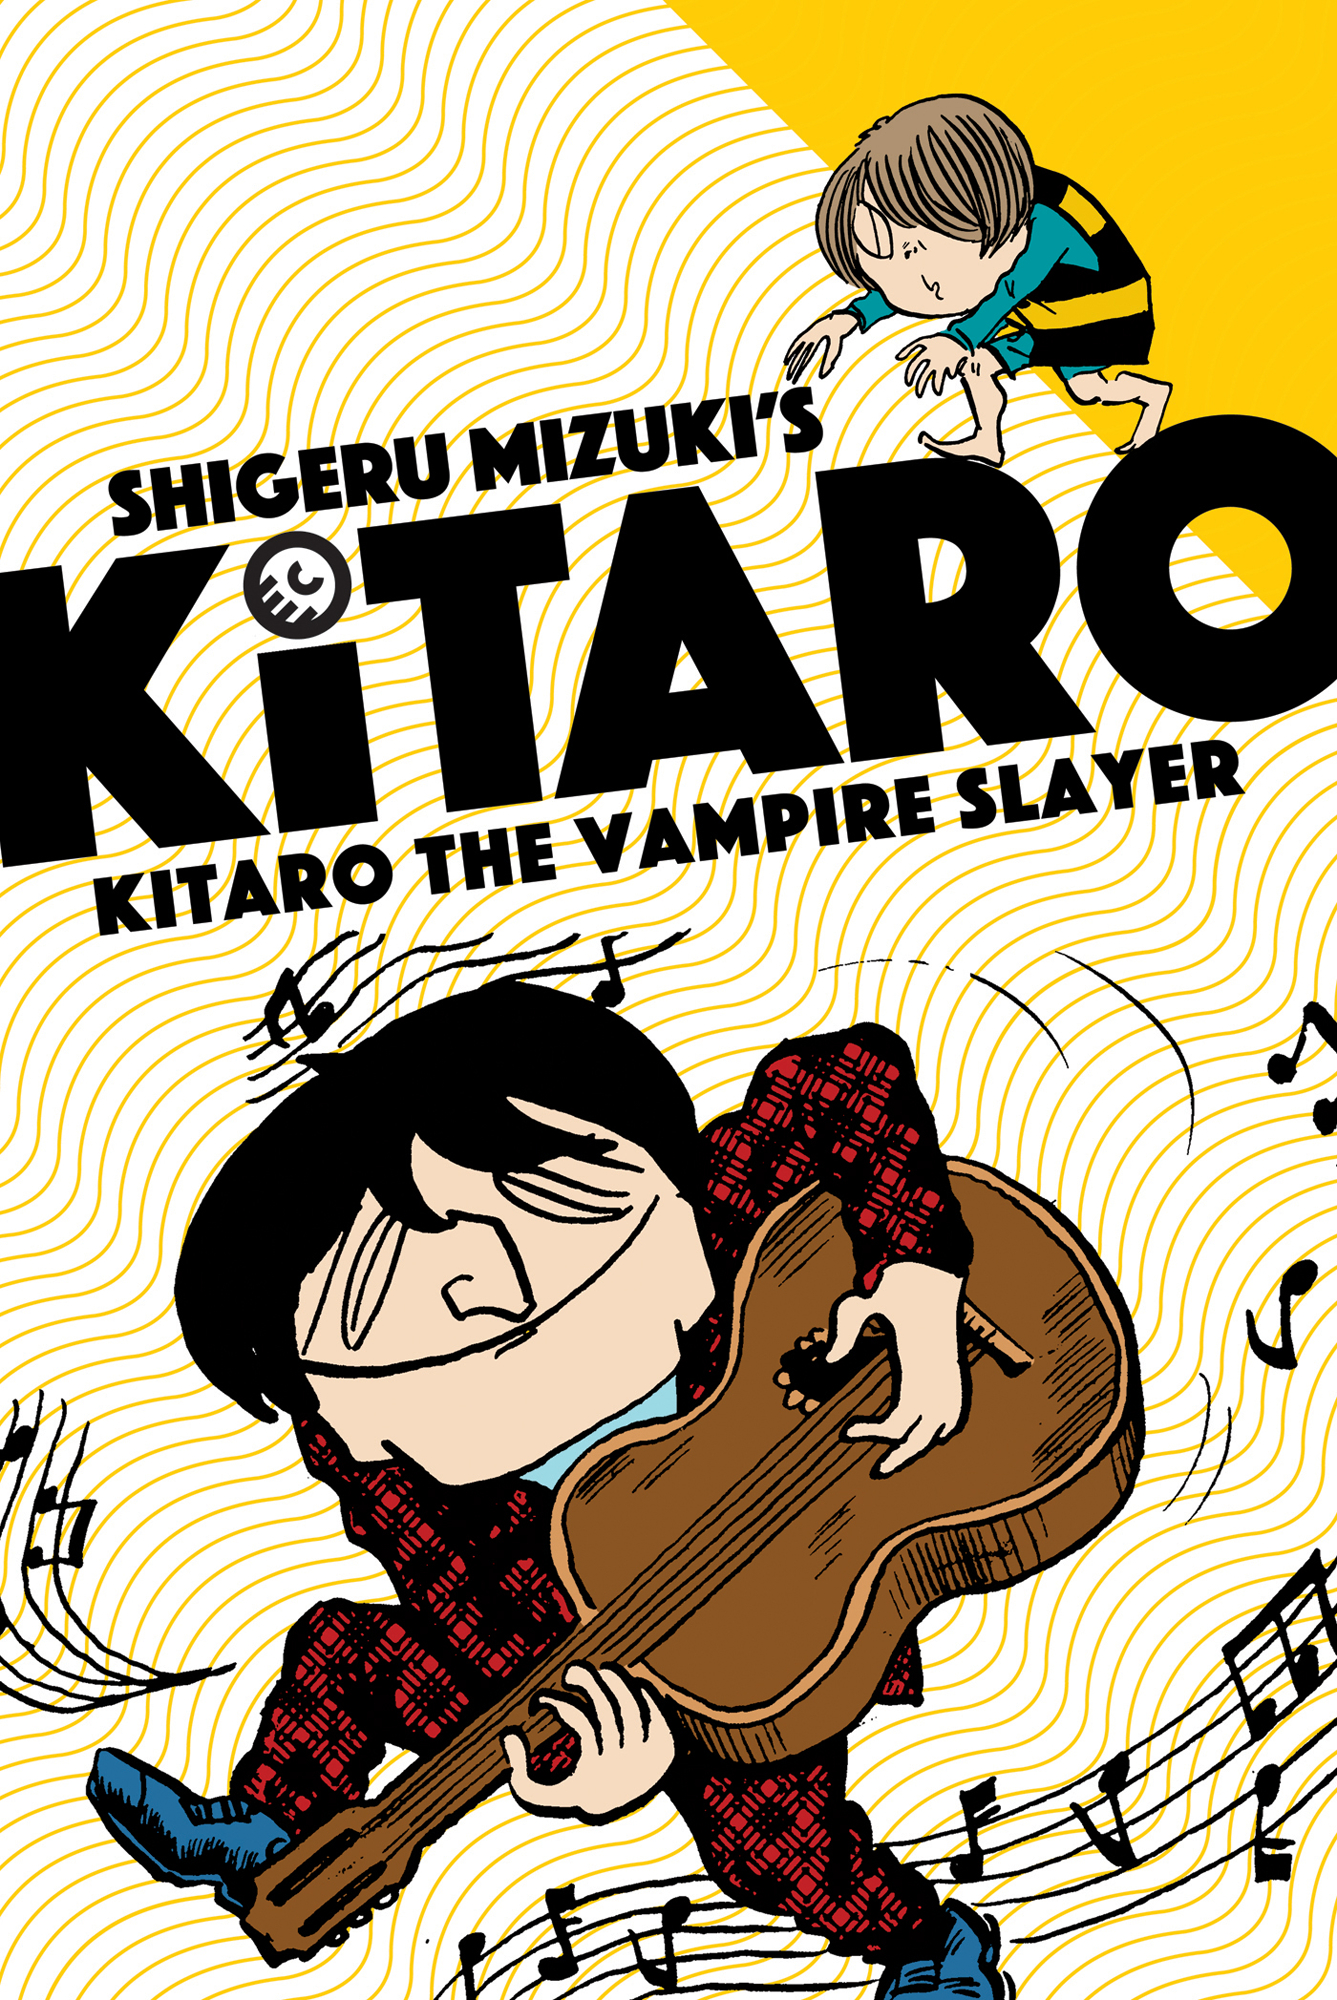 Kitaro Manga Volume 5 Vampire Slayer